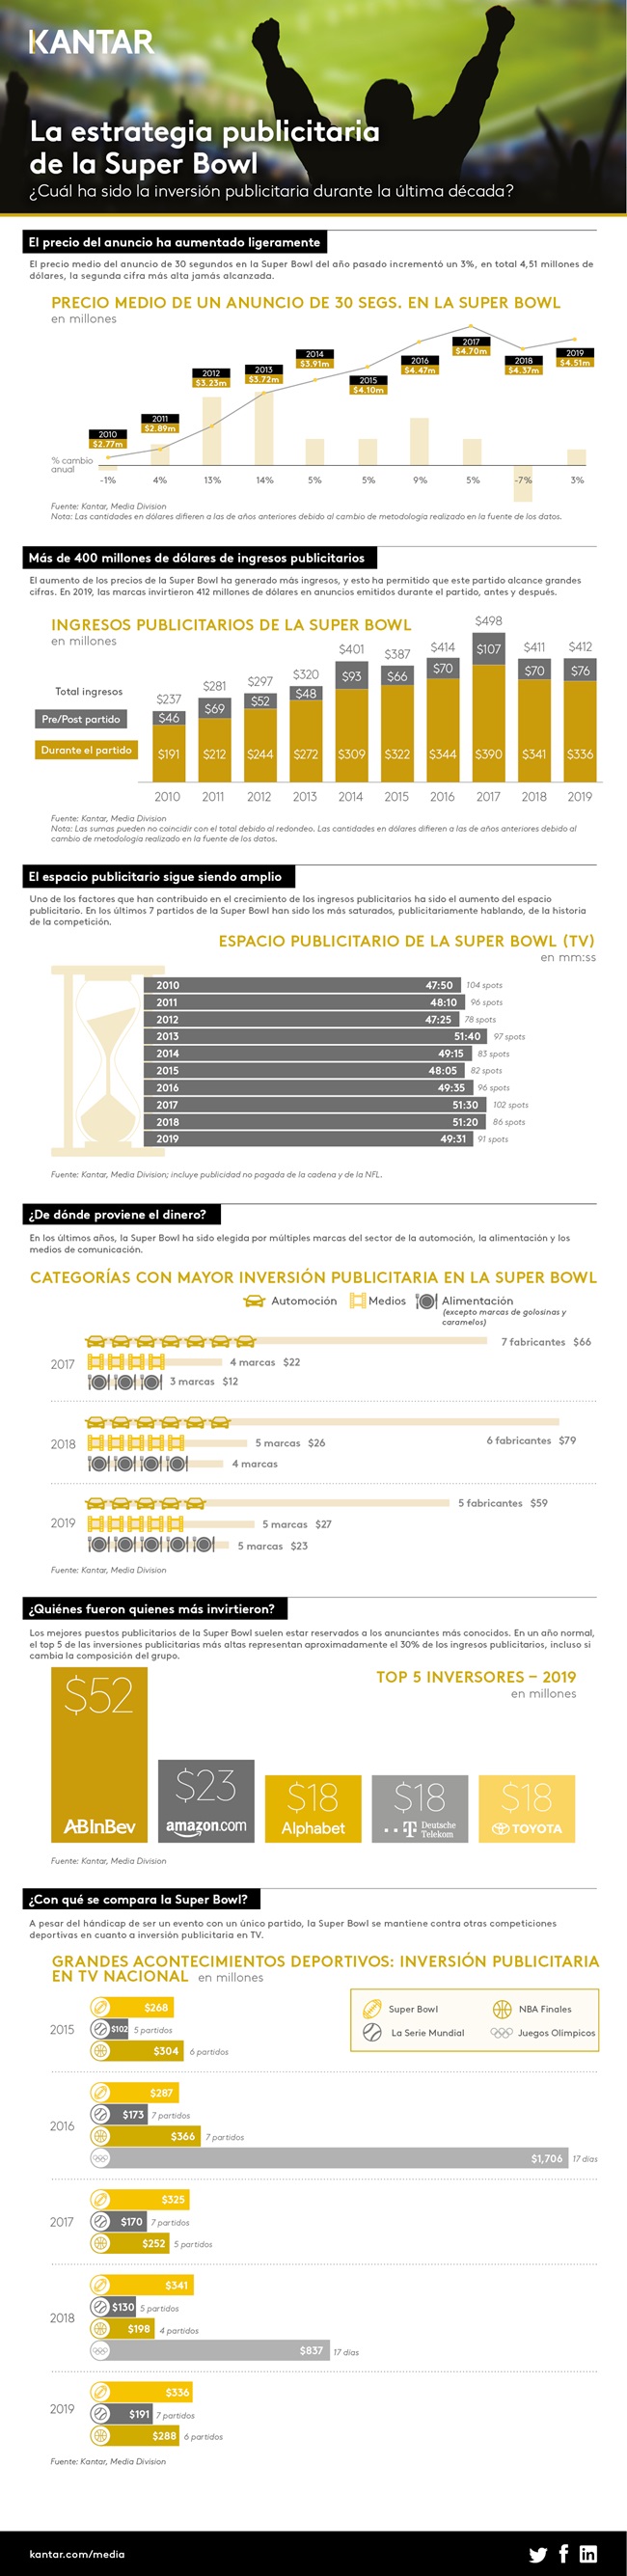 Infografía Super Bowl Kantar 2020